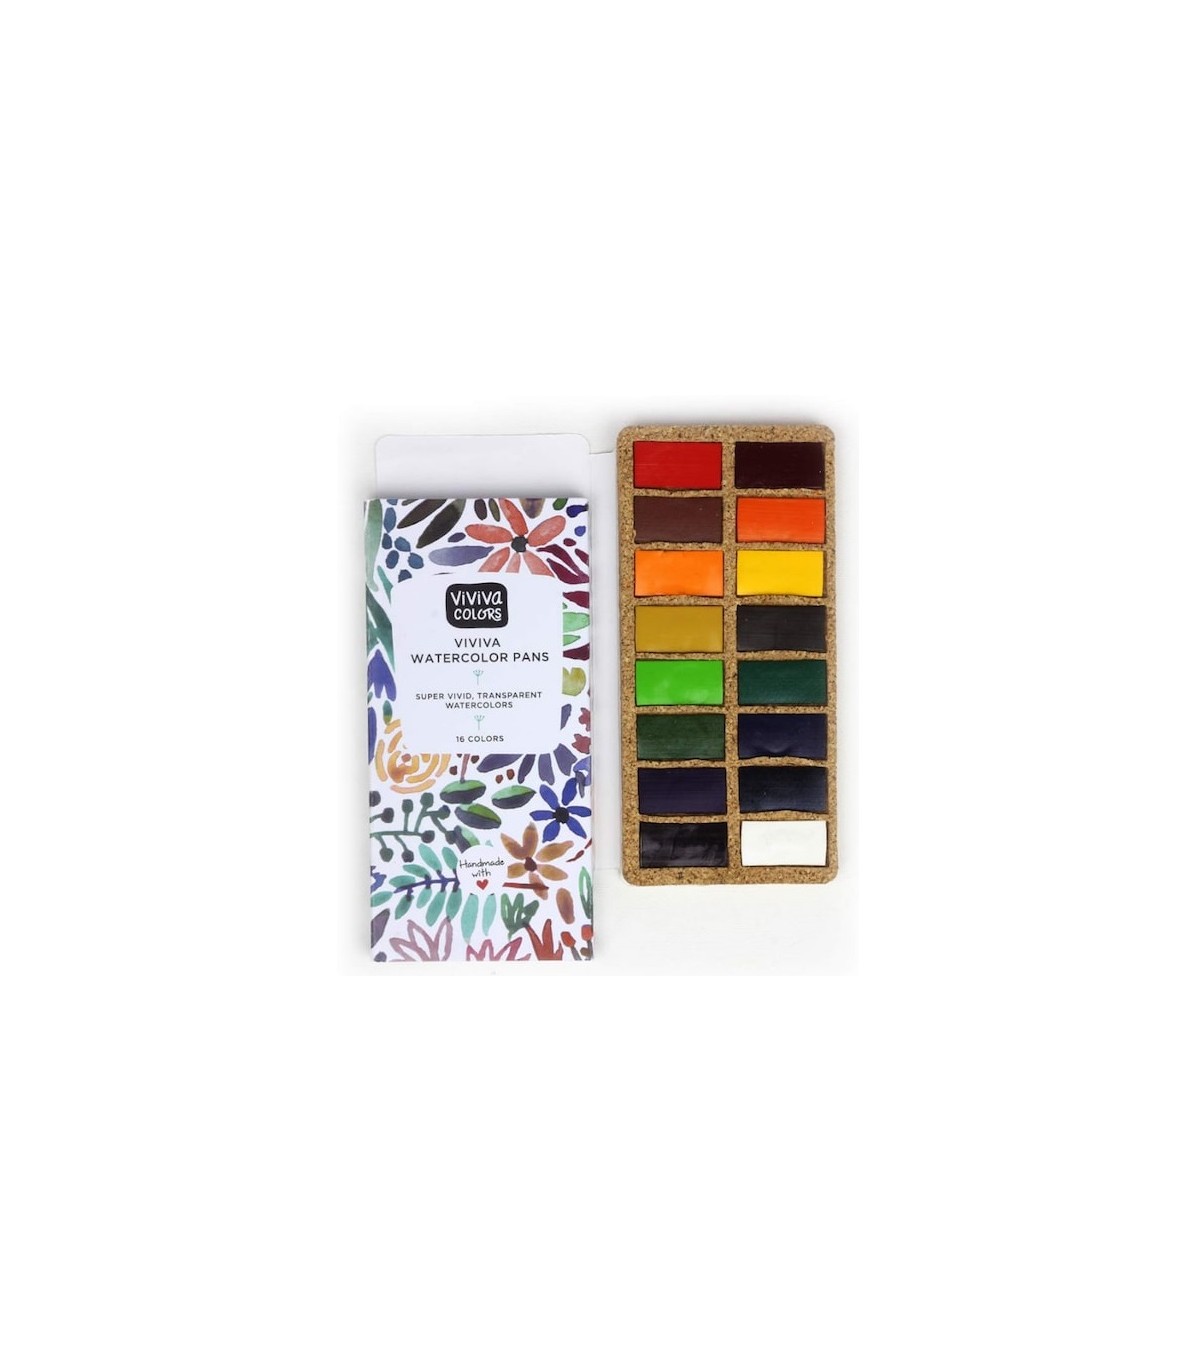 Viviva Watercolor Paint Set, Original 16 Colors, Vibrant Colors